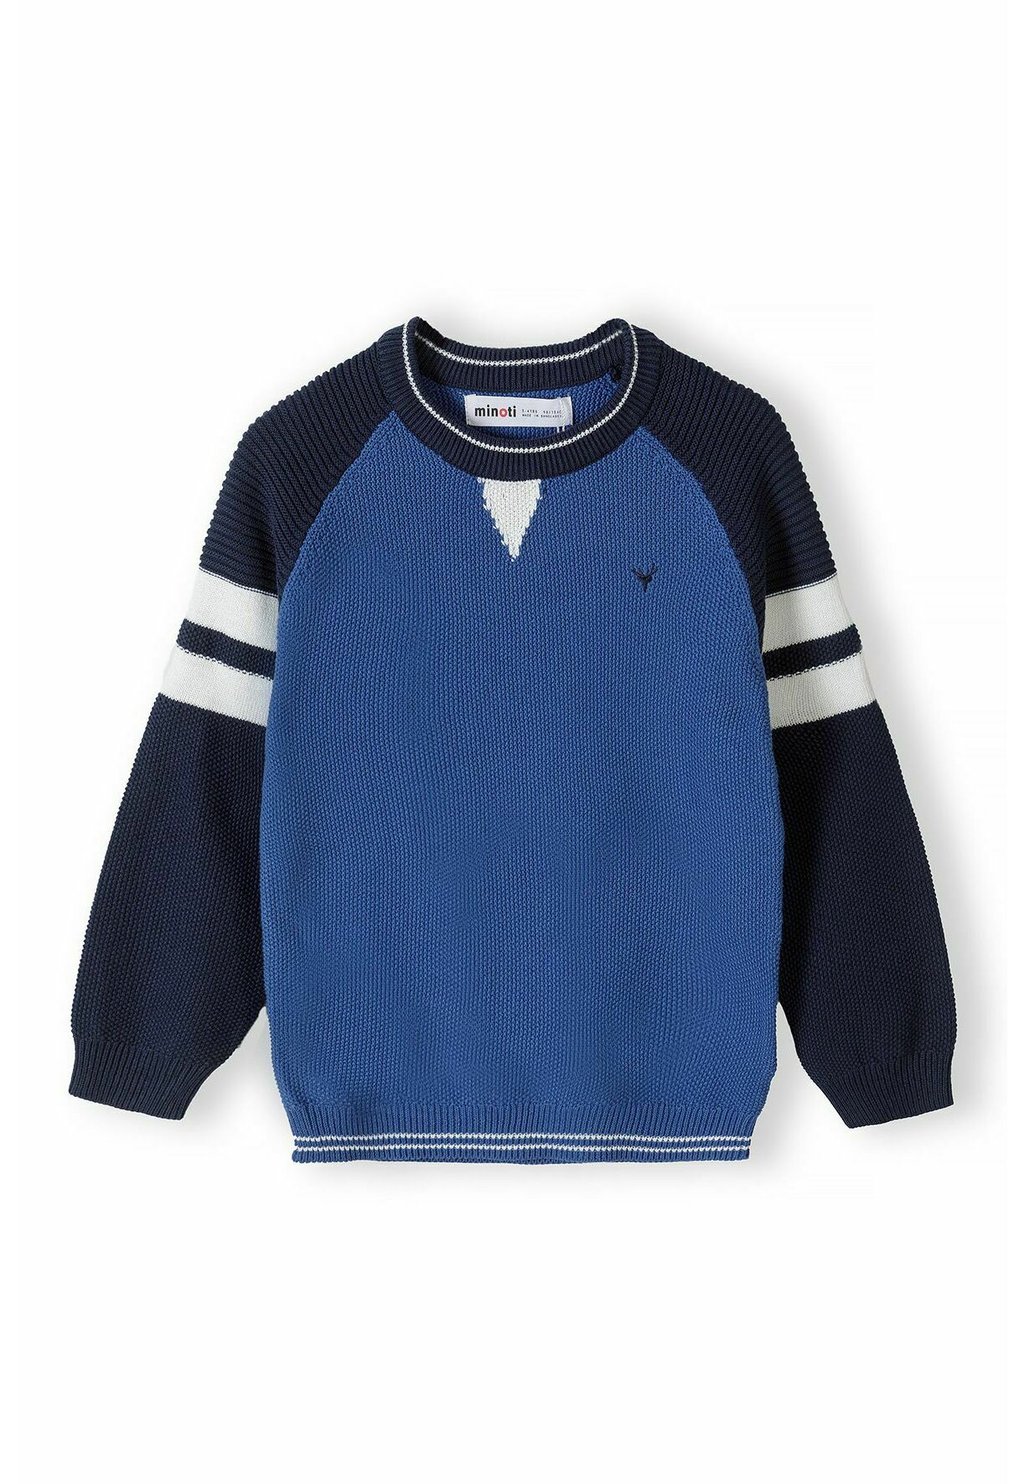 Вязаный свитер CREW NECK MINOTI, цвет blue navy